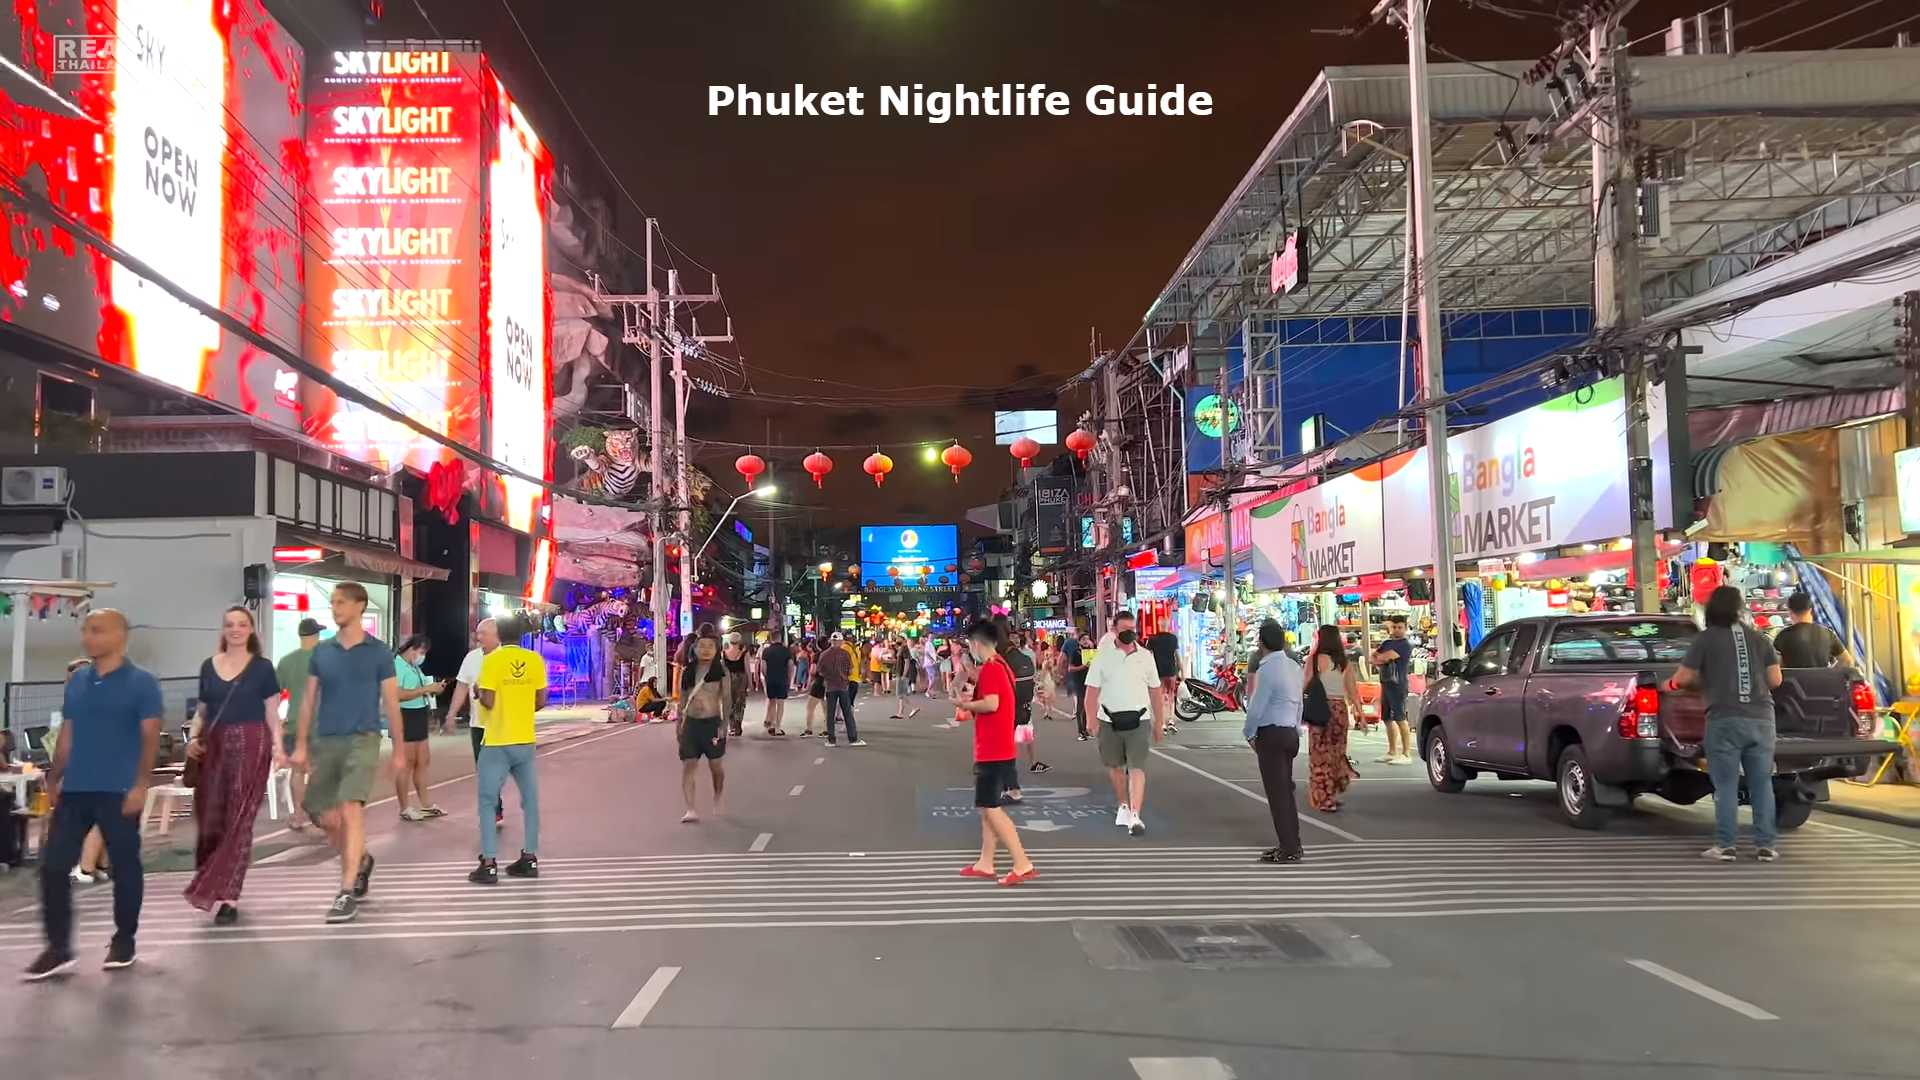 Phuket Nightlife Guide